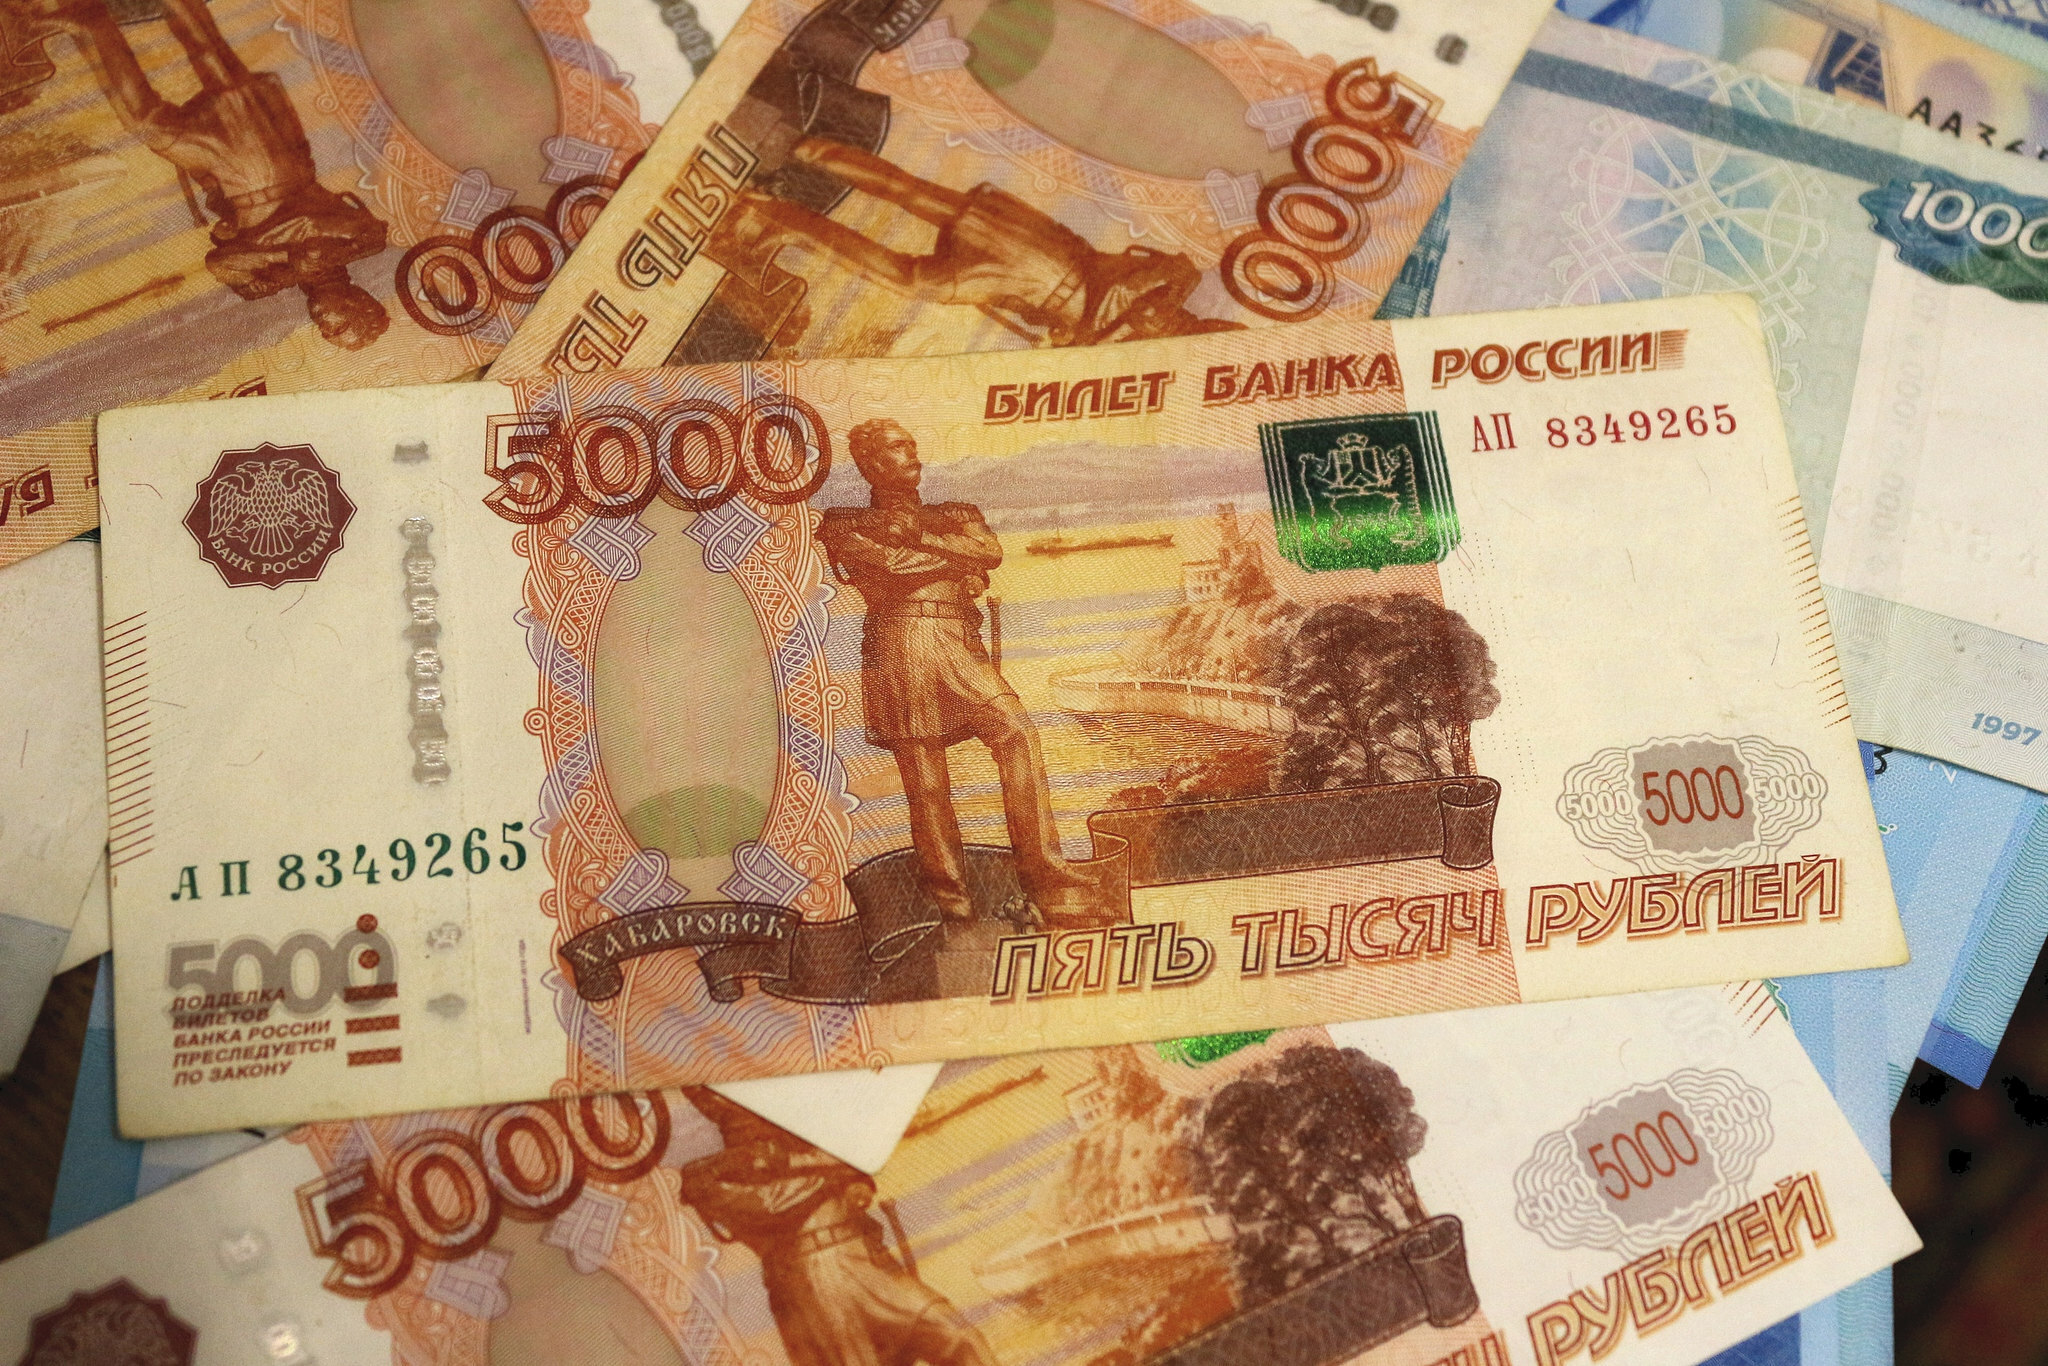 Тюменцы обогатили мошенника из поселка Боровский на четверть миллиона рублей